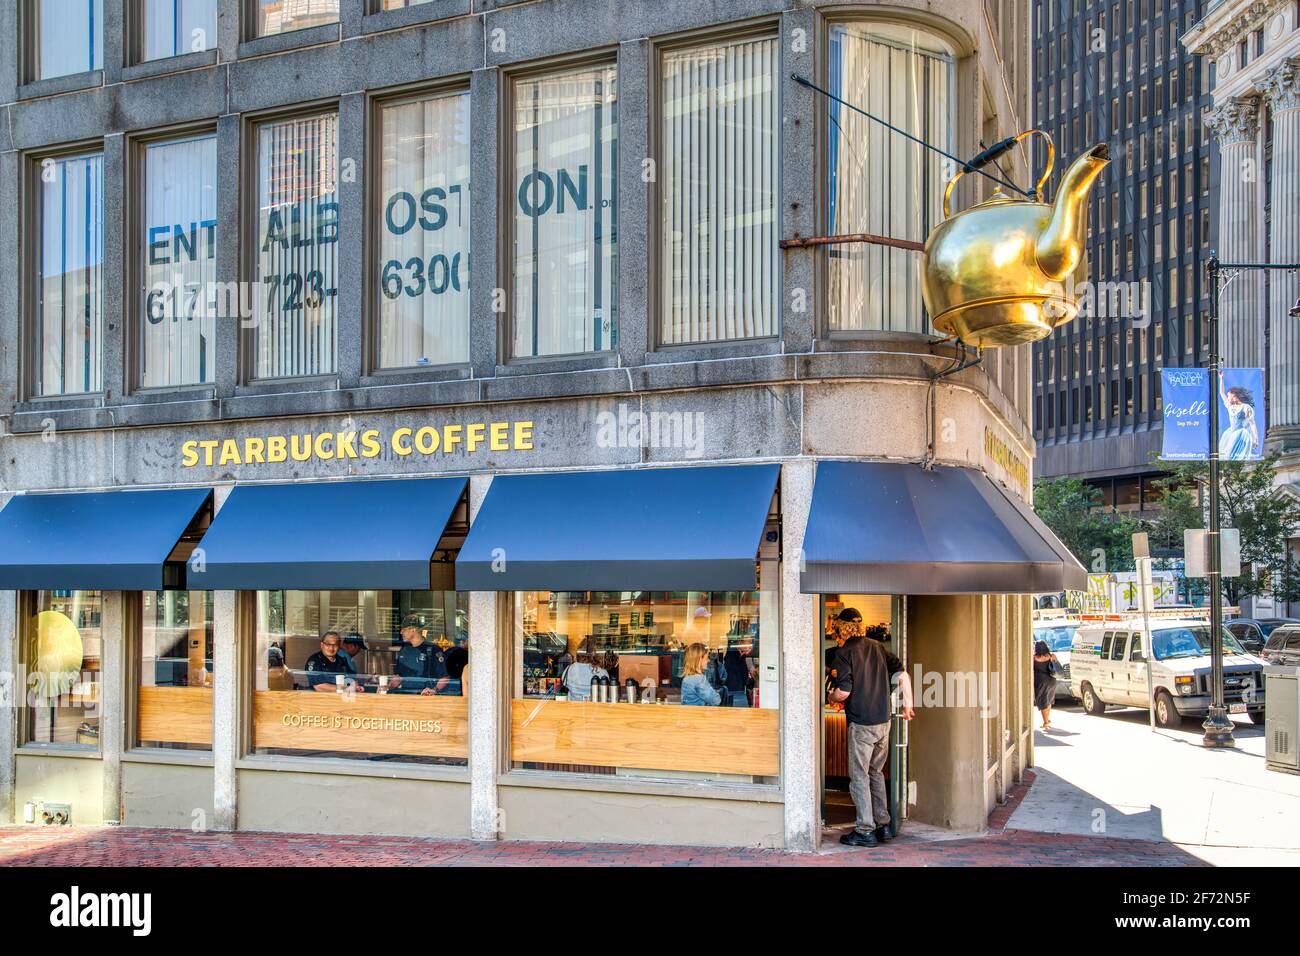 Il bollitore per il tè a vapore, originariamente lanciato per l'Oriental Tea Company nel 1873, ora adora lo Starbucks a 57 Court Street. Foto Stock